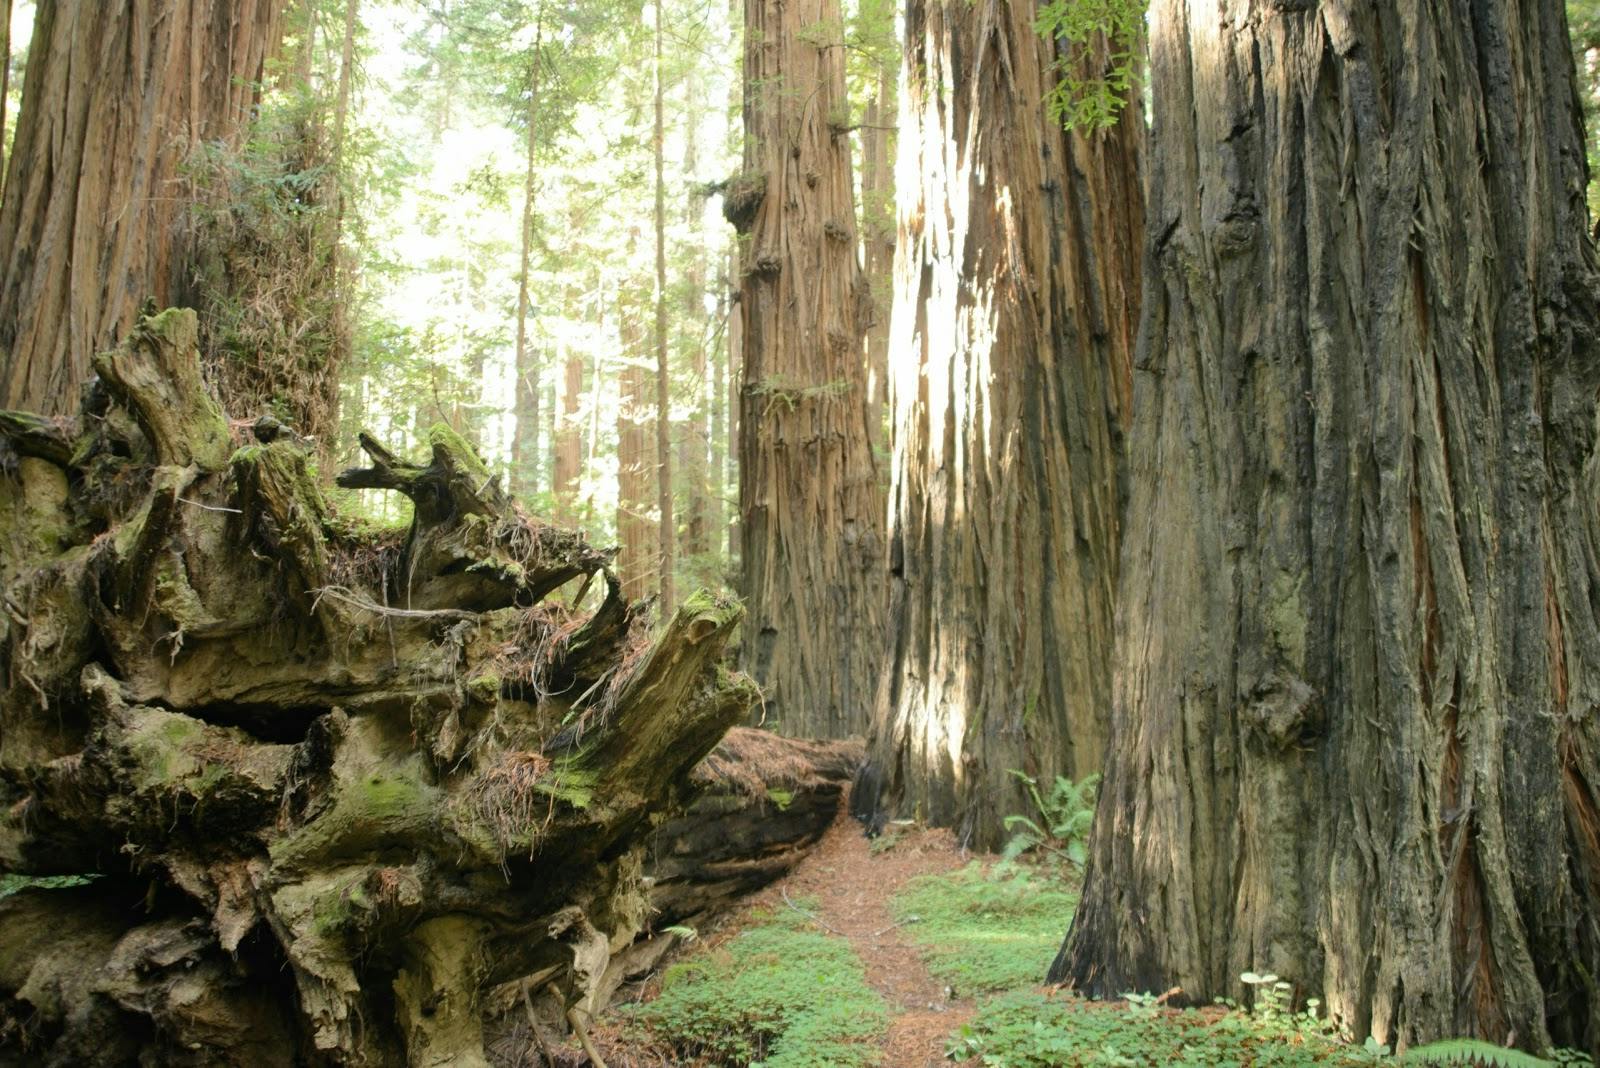 Image - Humboldt Redwoods State Park